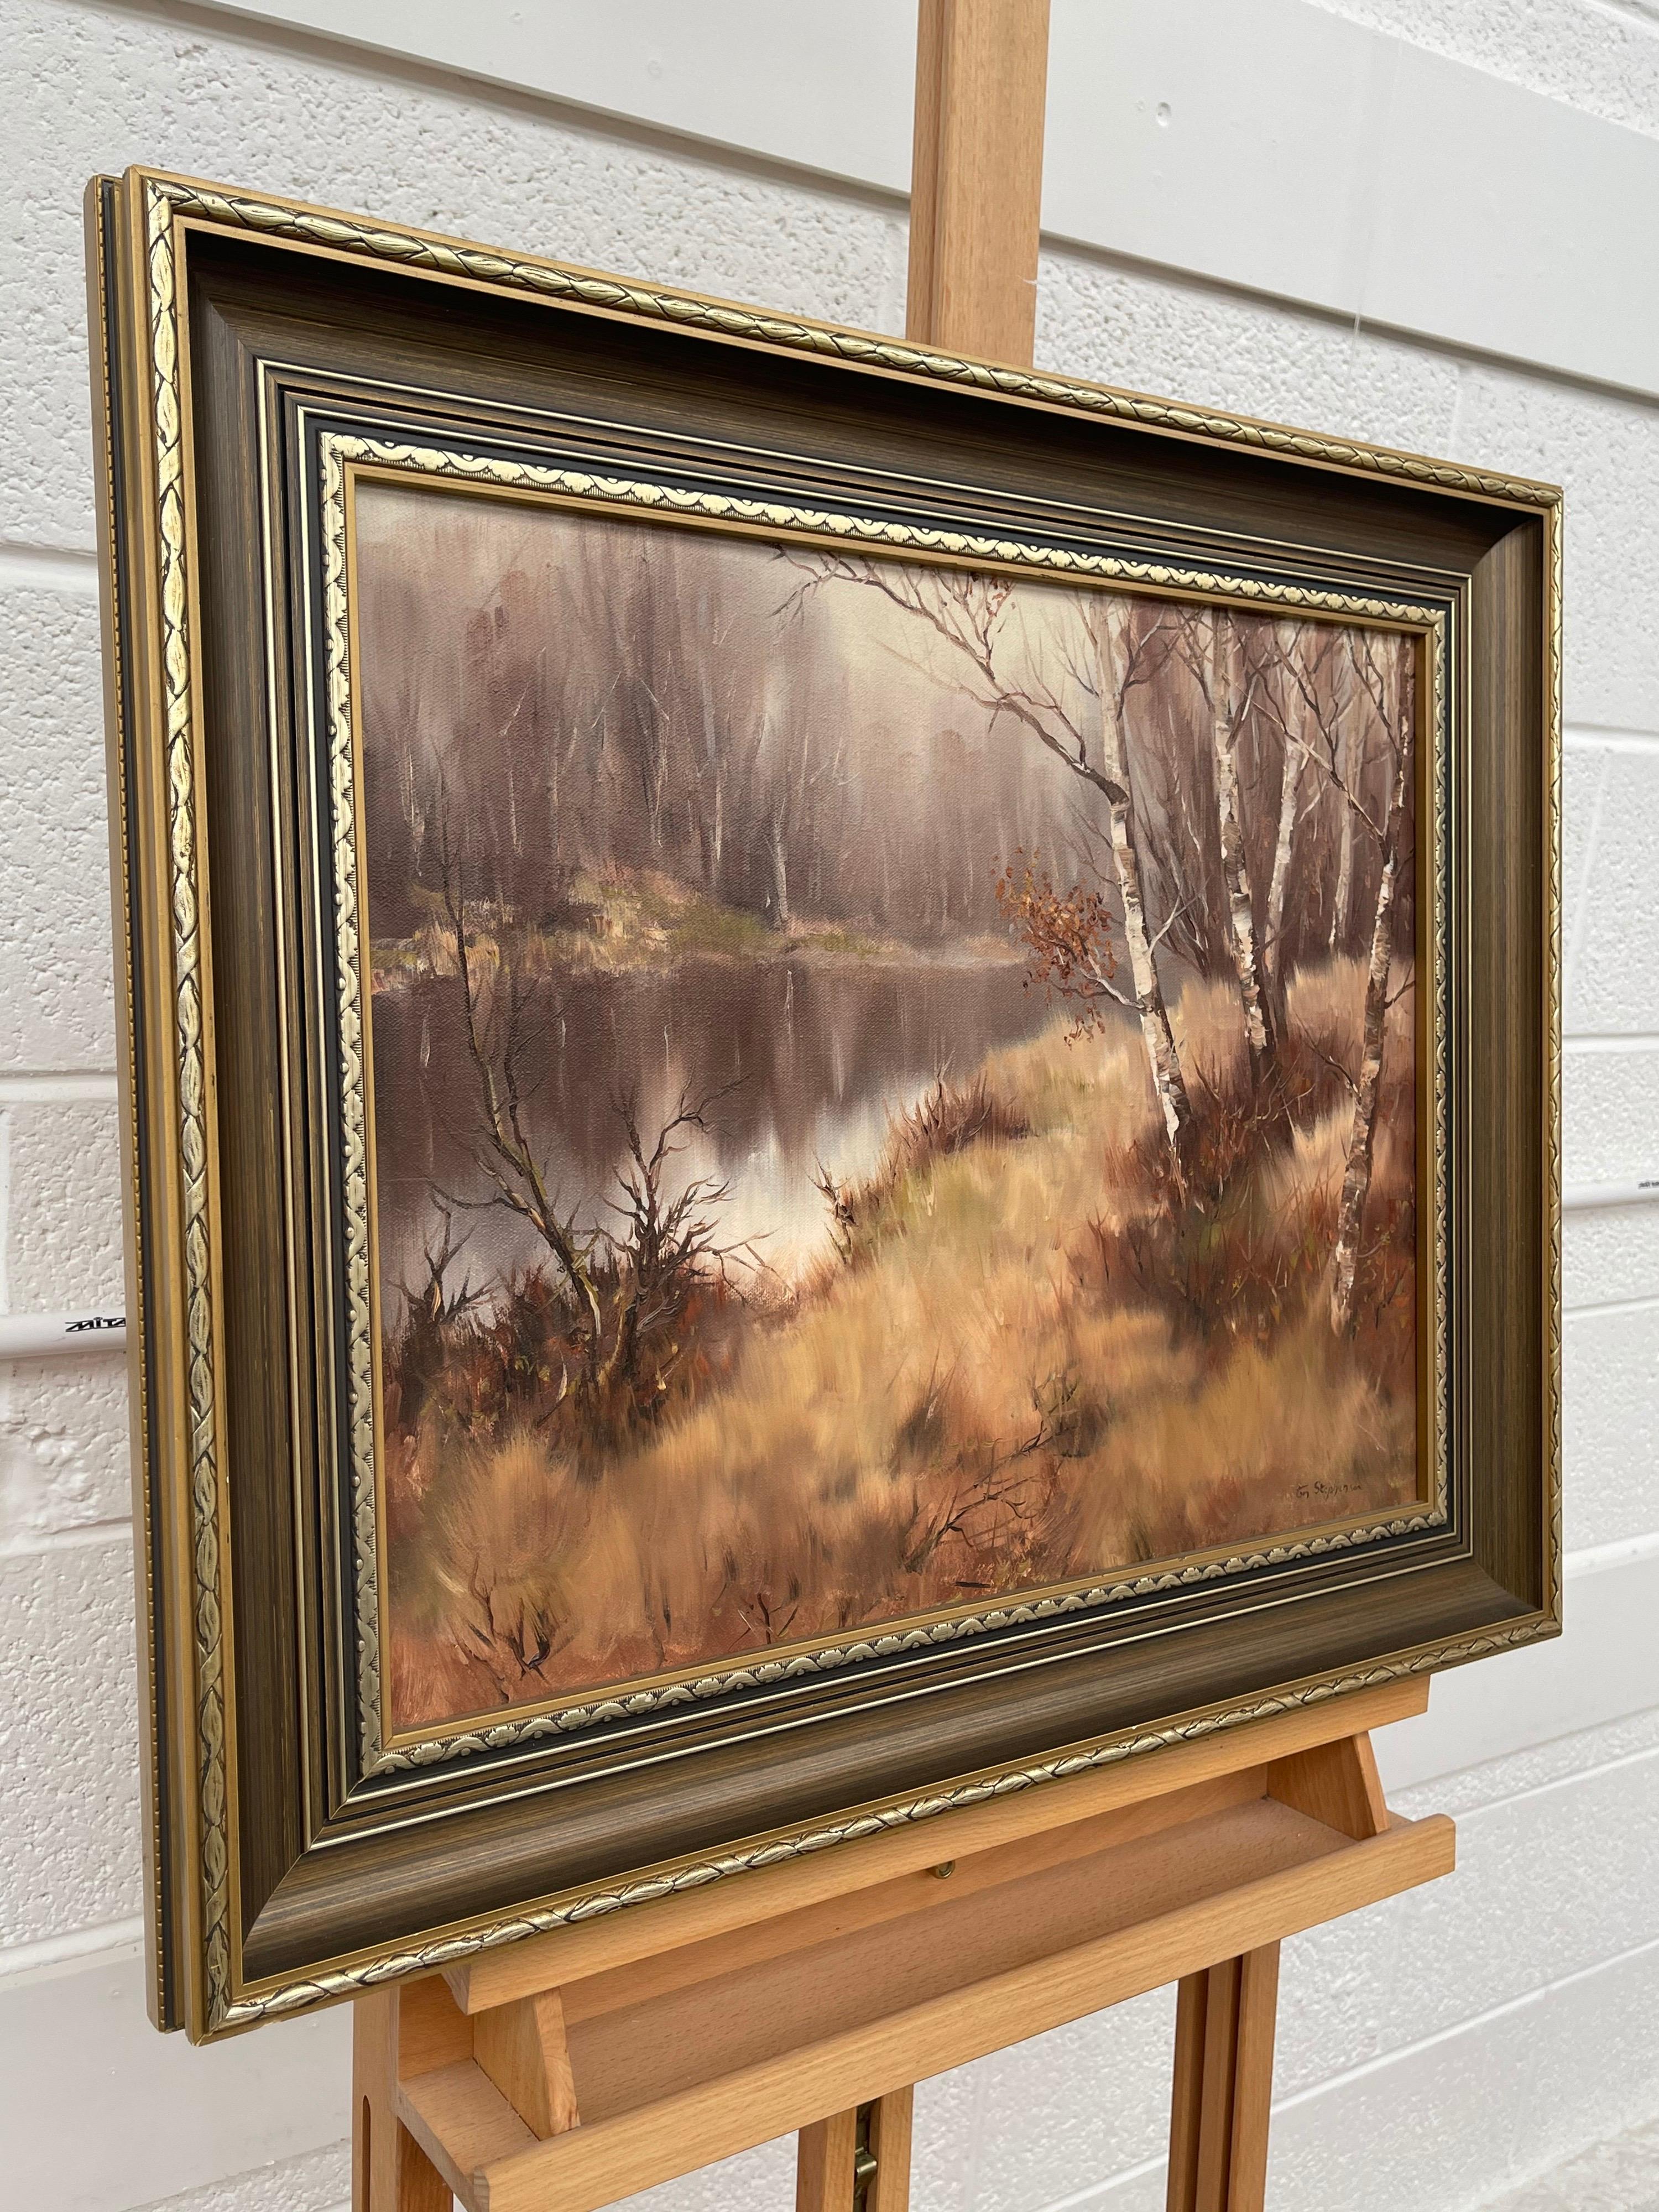 Ölgemälde einer Flusslandschaft in Irland, Landschaft des modernen irischen Künstlers – Painting von Tom Stephenson